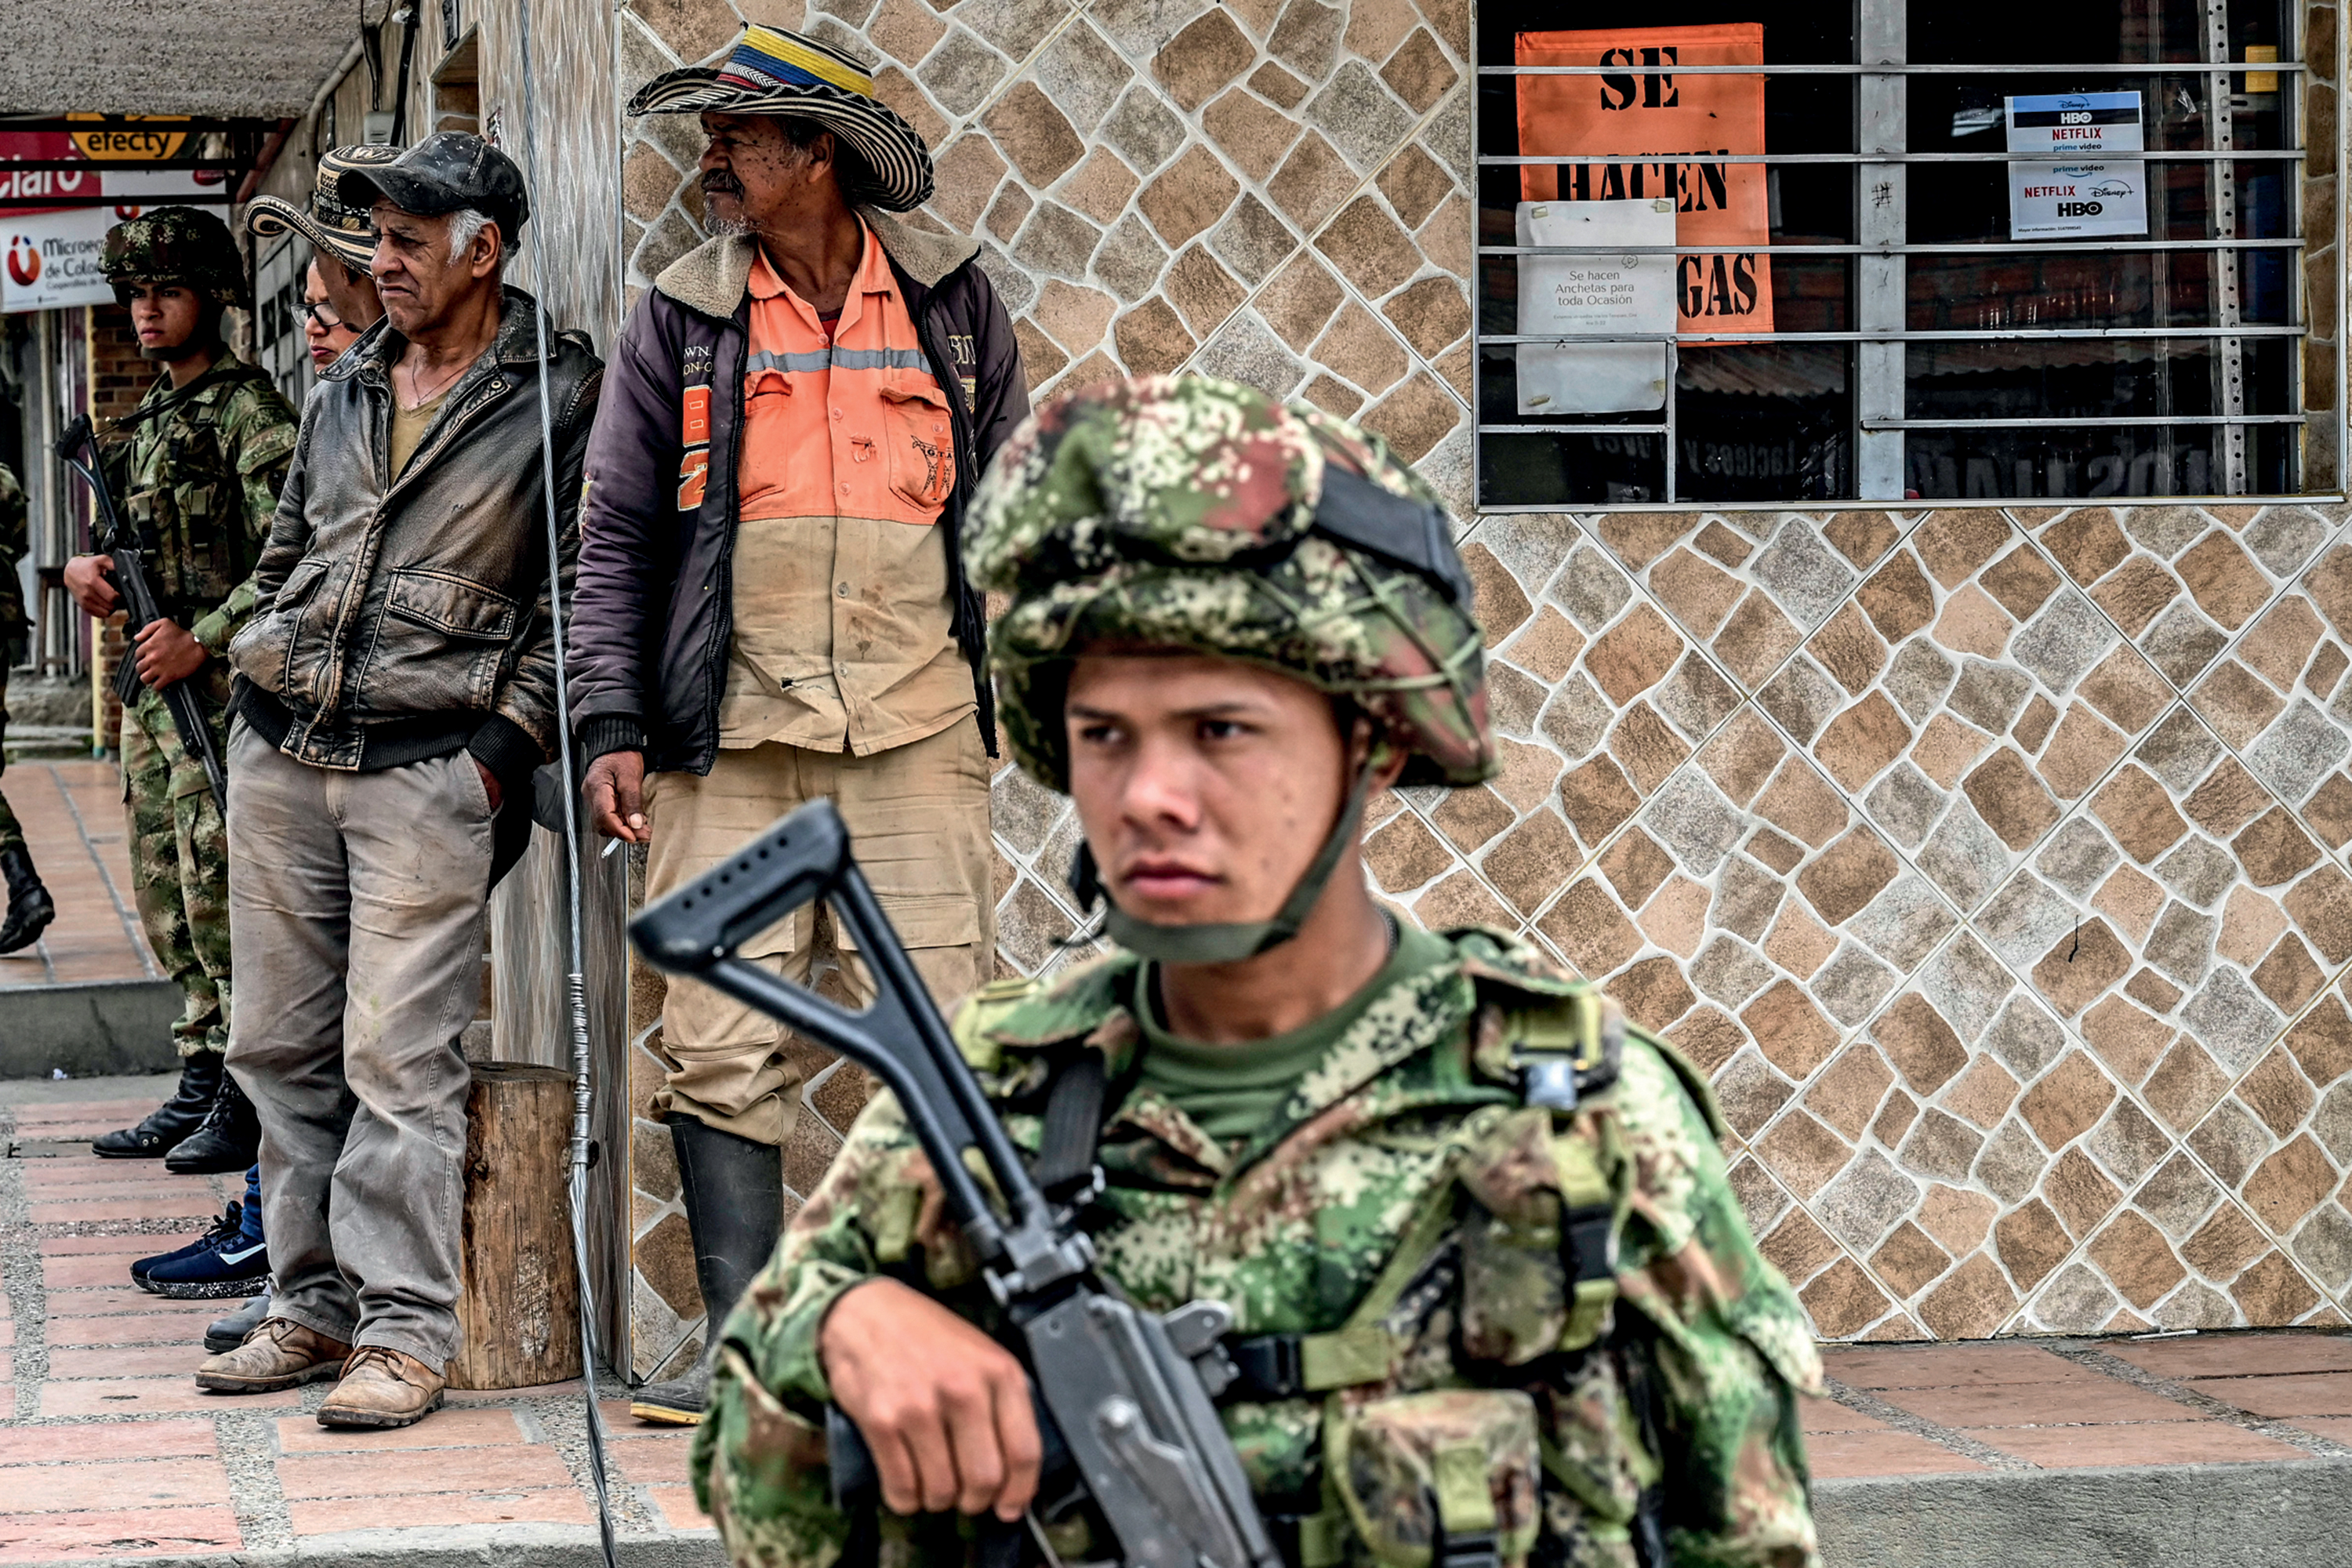 DESAFIO - Patrulha em Antioquia: violência após a extradição de narcotraficante -